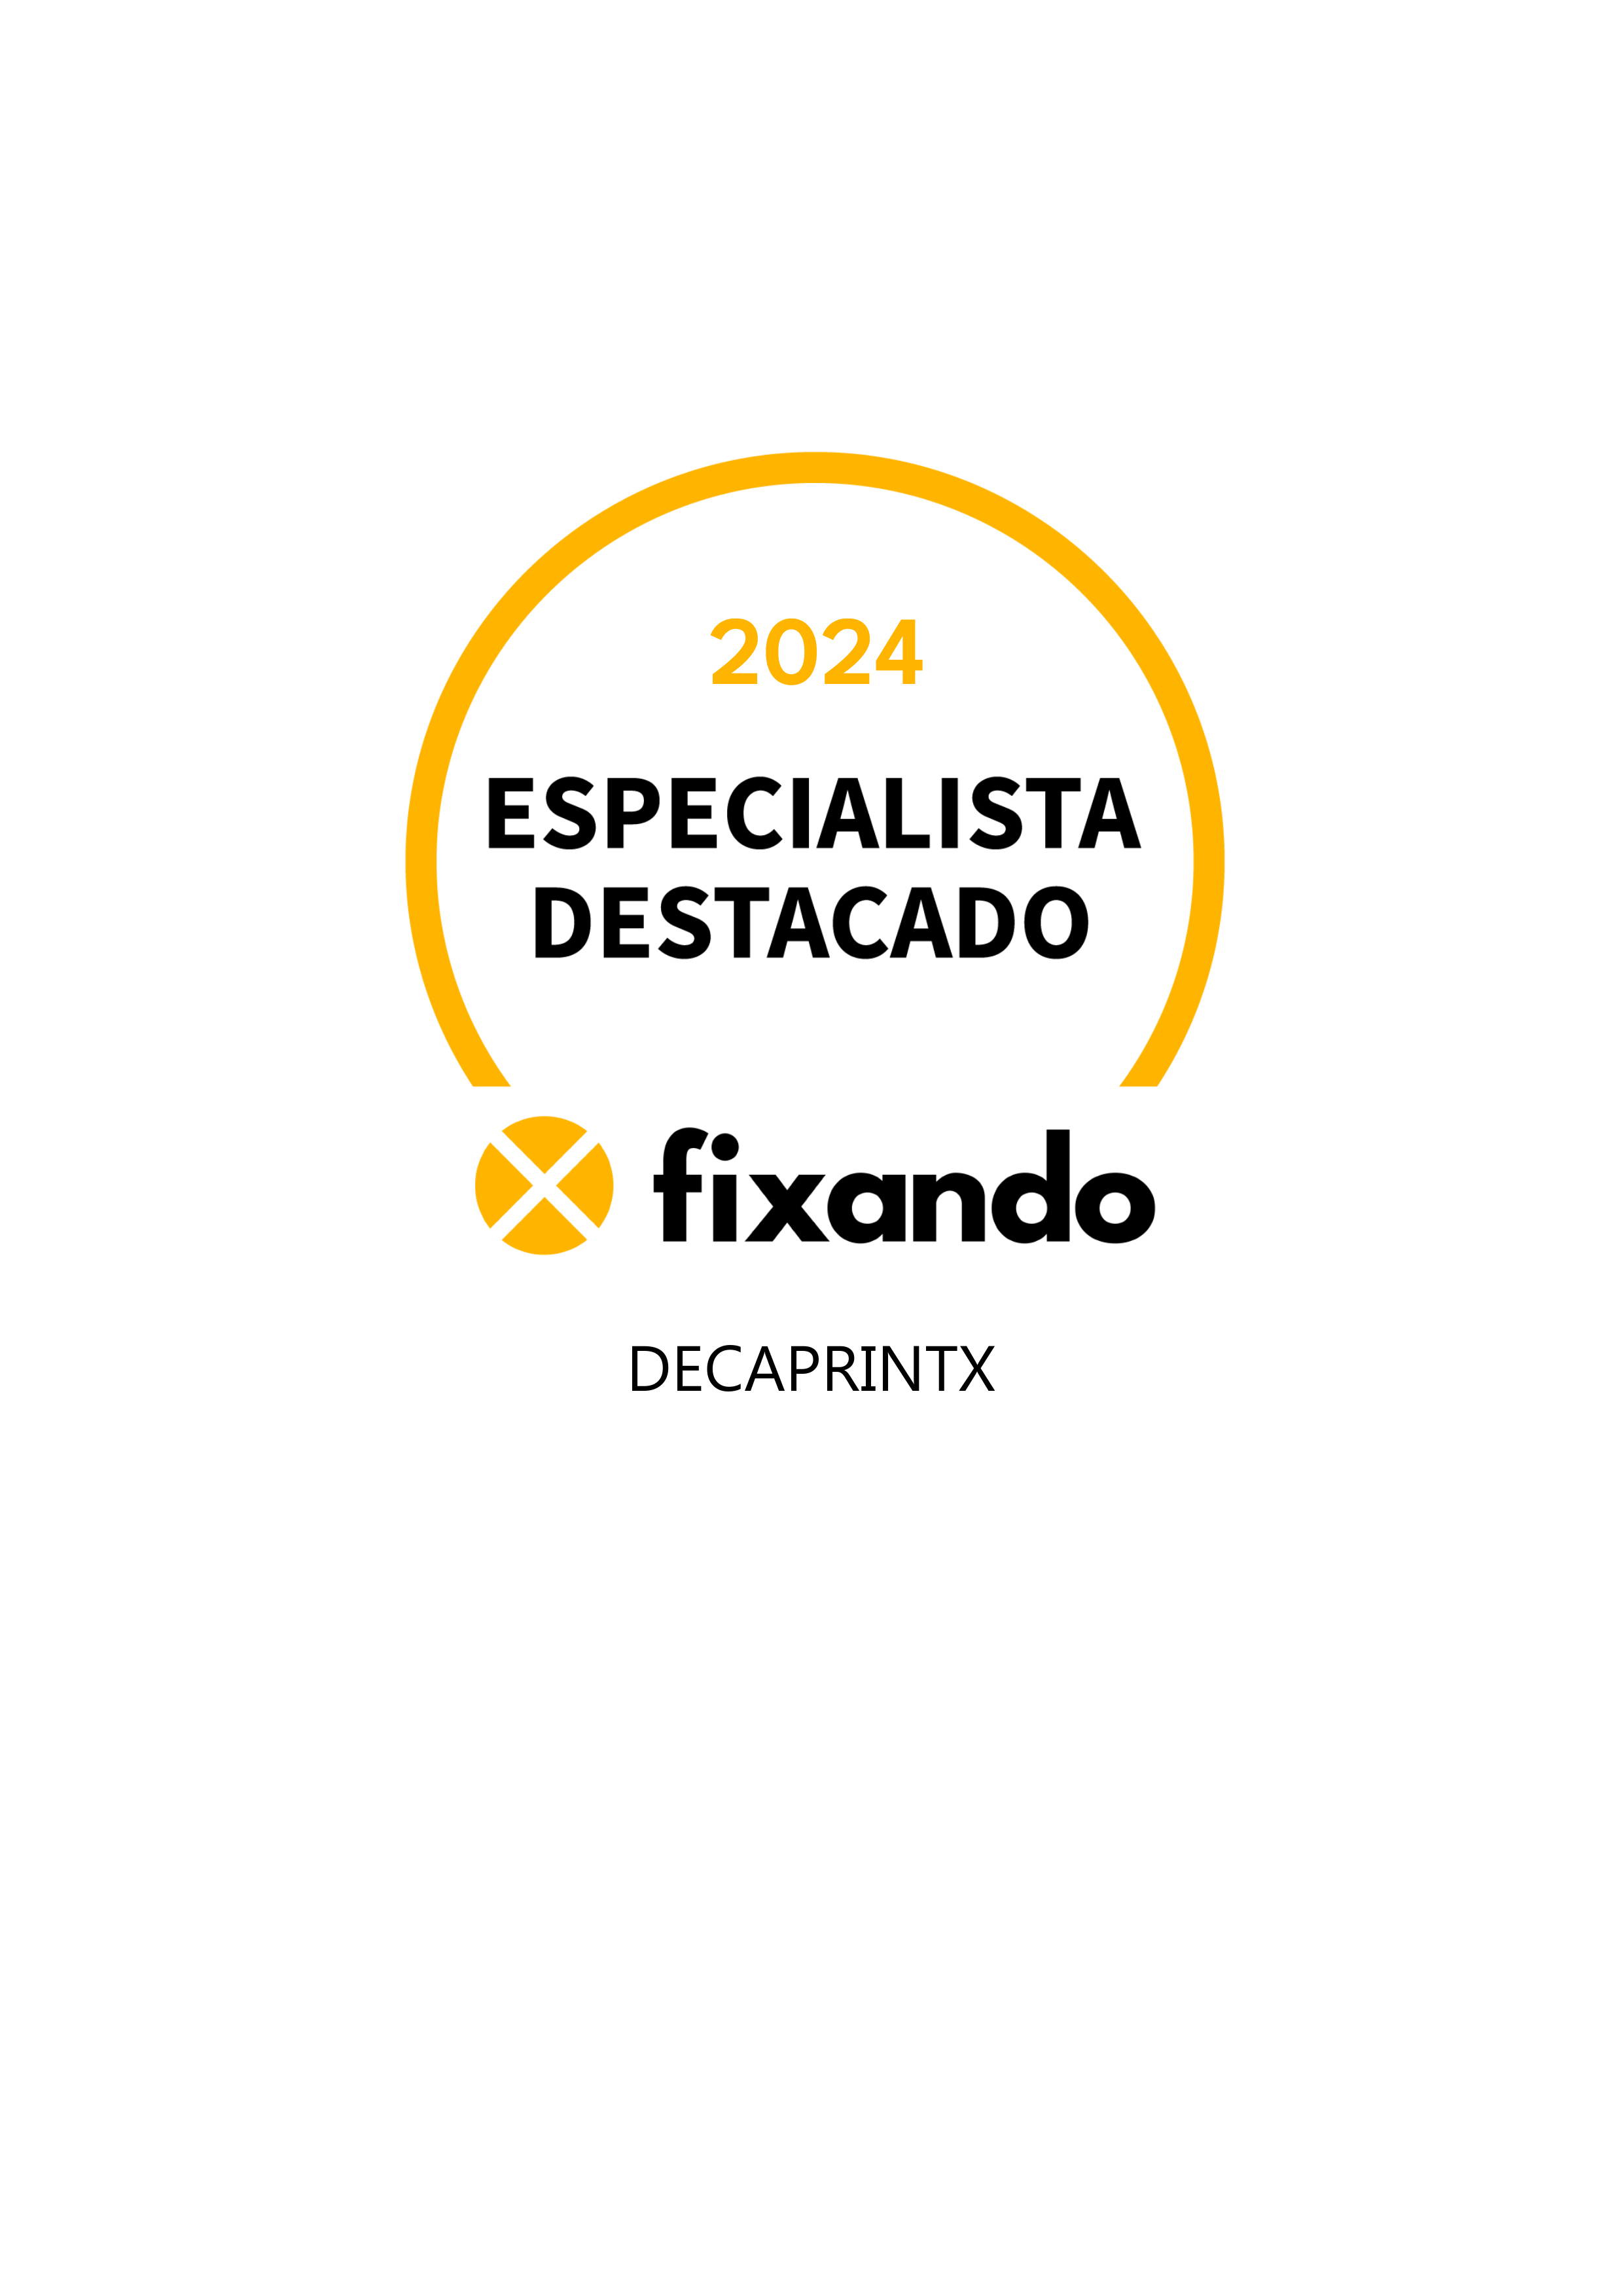 DecaPrintX - Vila Nova de Gaia - Serviços de Impressão